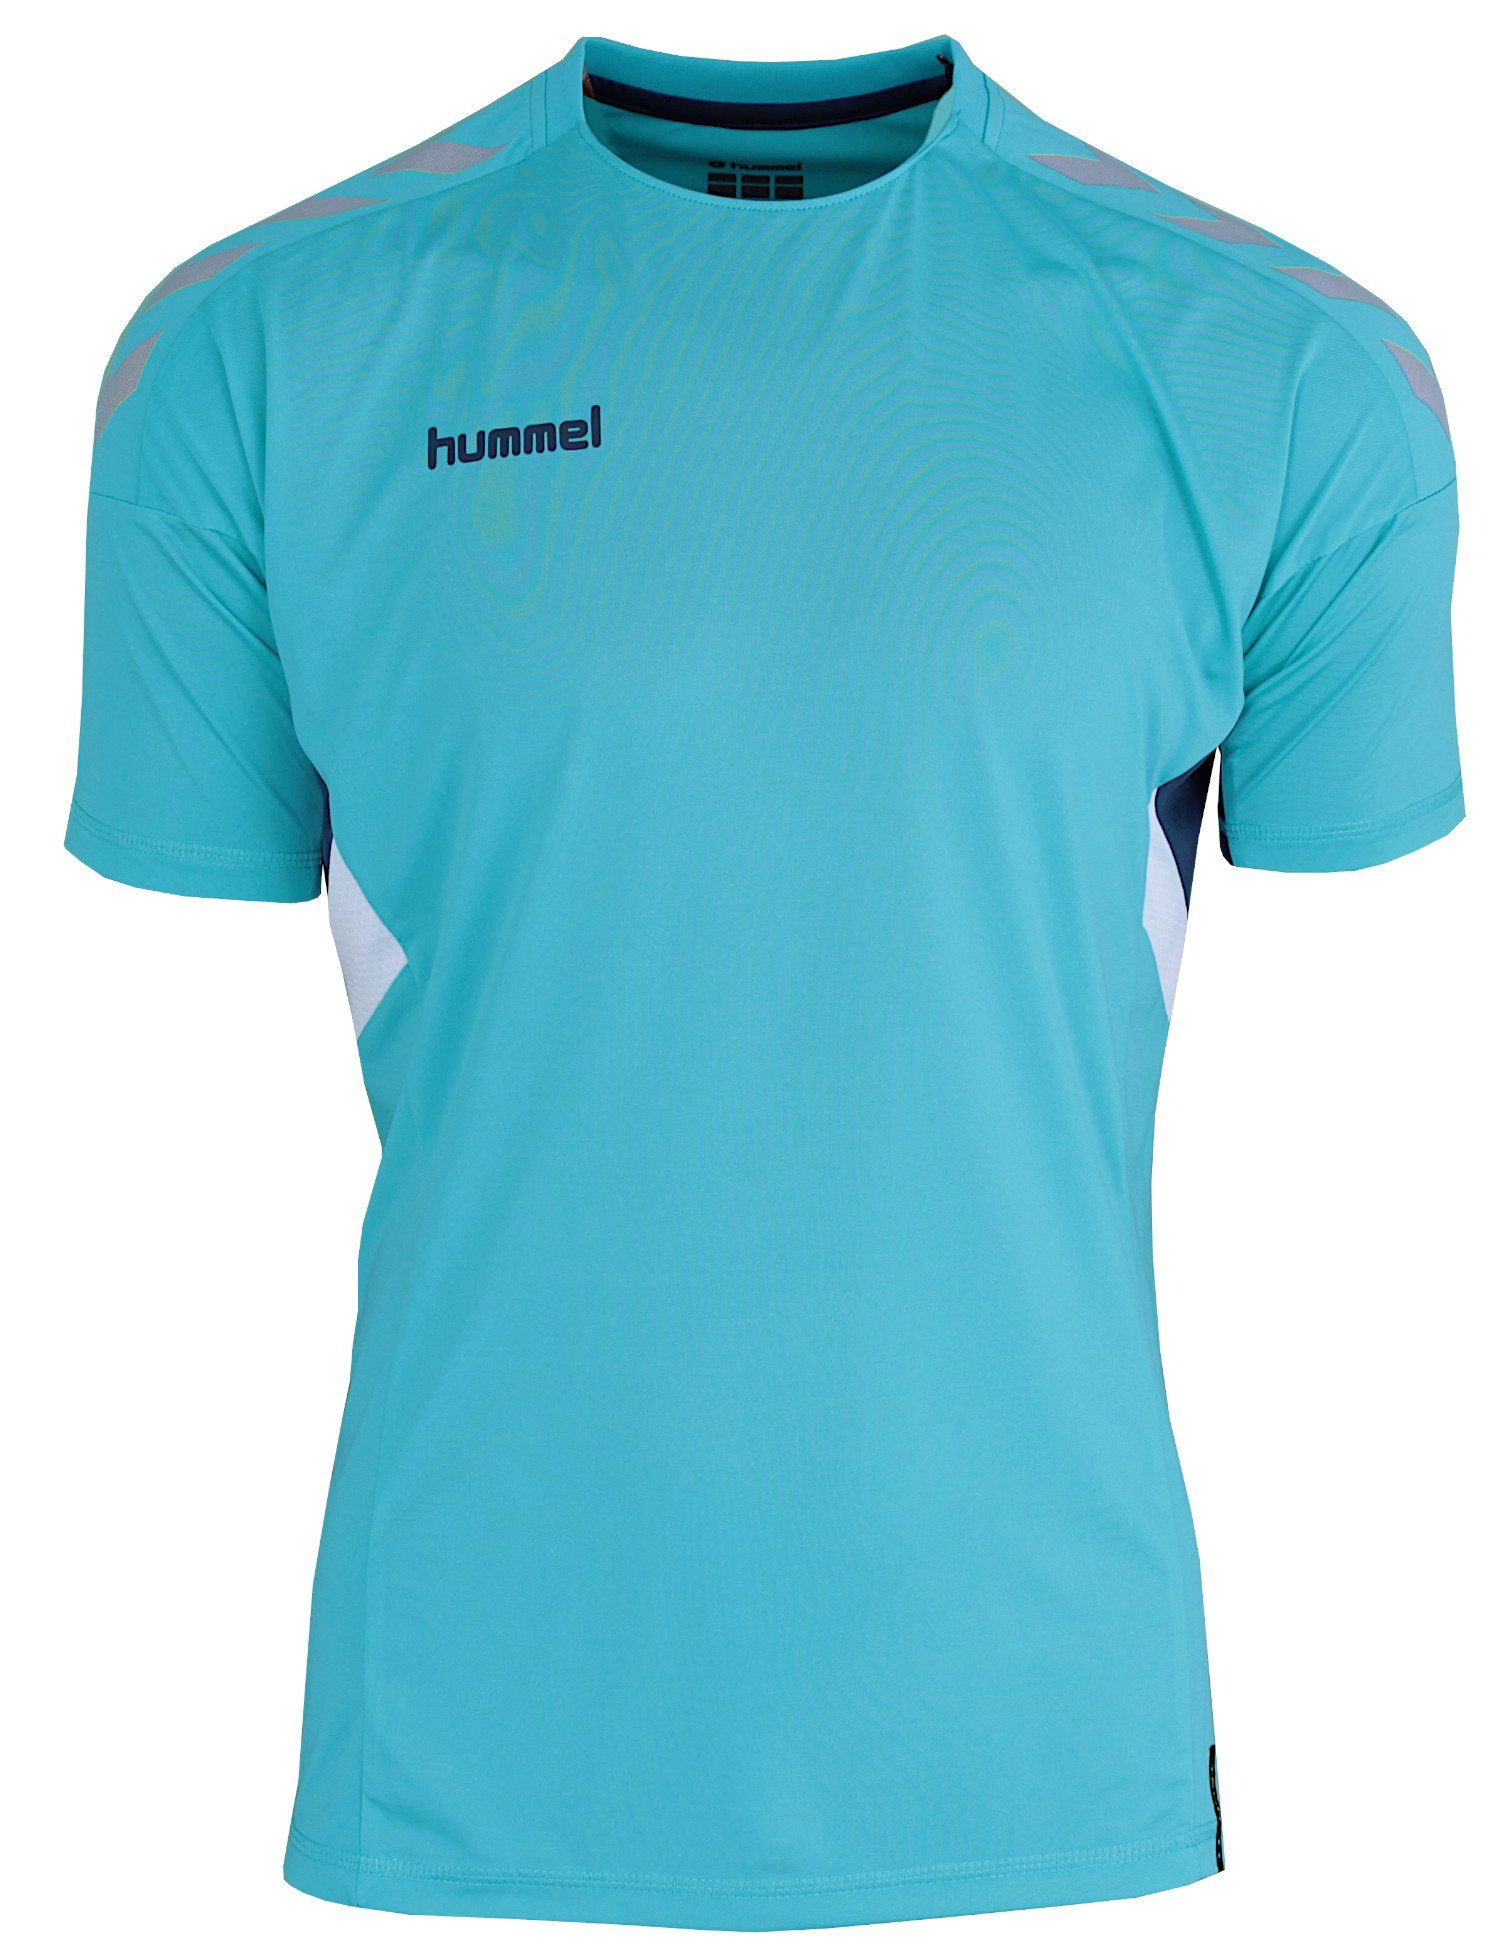 hummel Trainingsshirt Move Tech Trikot Shirt Optimale Atmungsaktivität, schnelltrocknend Türkis (Scuba Blue)